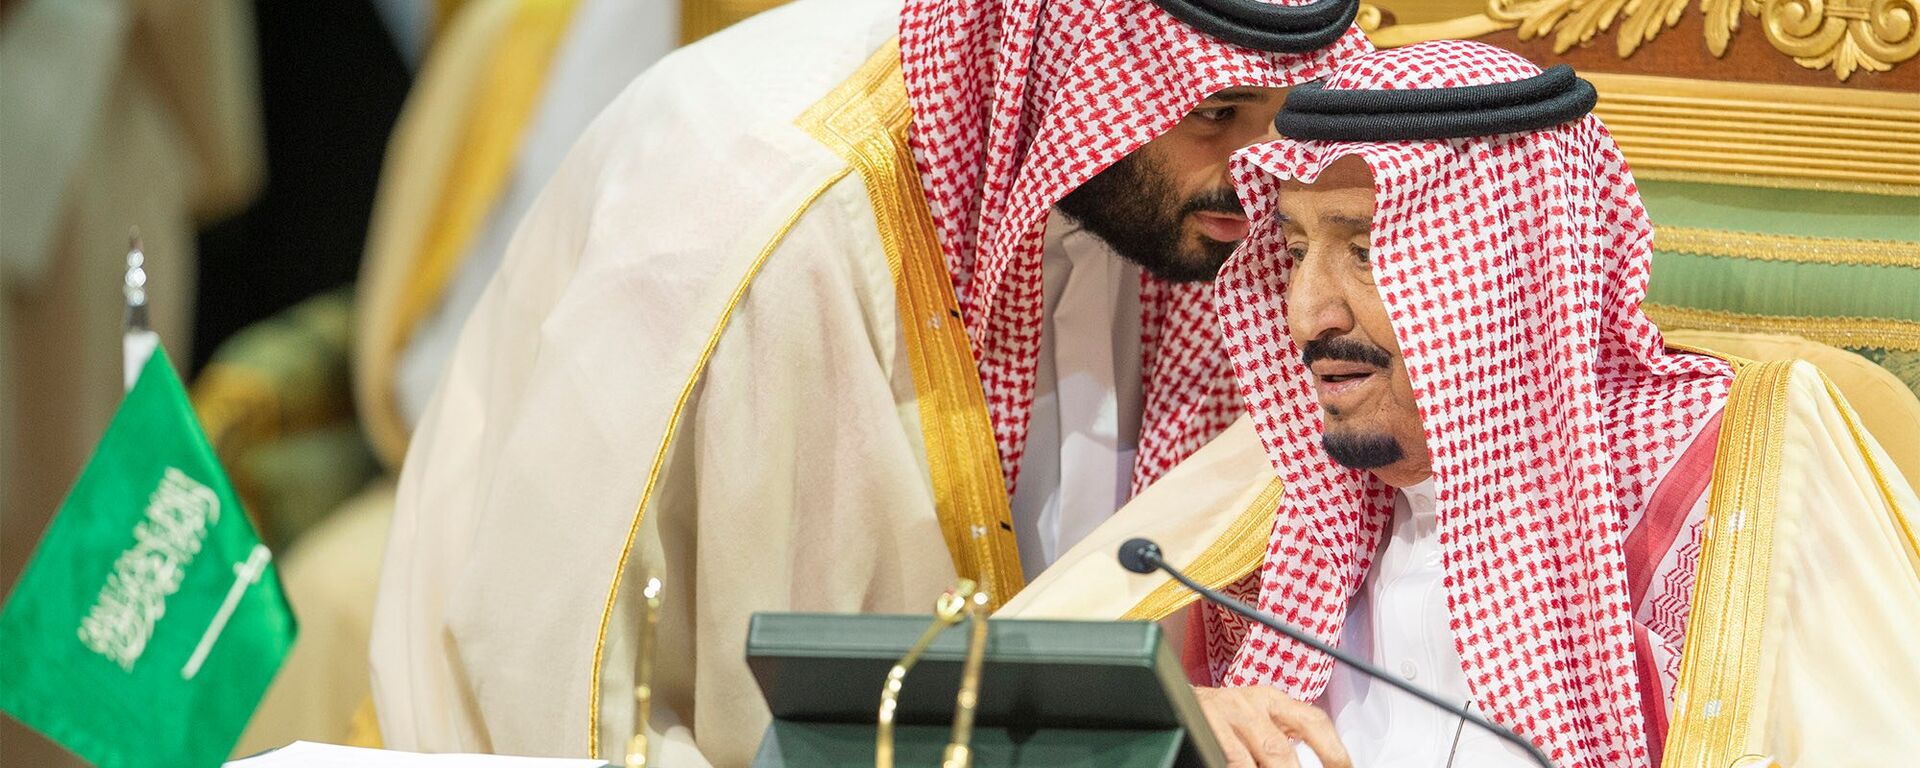 ولي العهد السعودي الأمير محمد بن سلمان يتحدث إلى العاهل السعودي الملك سلمان بن عبد العزيز آل سعود في افتتاح القمة الخليجية الـ 39 في الرياض، 9 ديسمبر/كانون الأول 2018 - سبوتنيك عربي, 1920, 22.07.2021